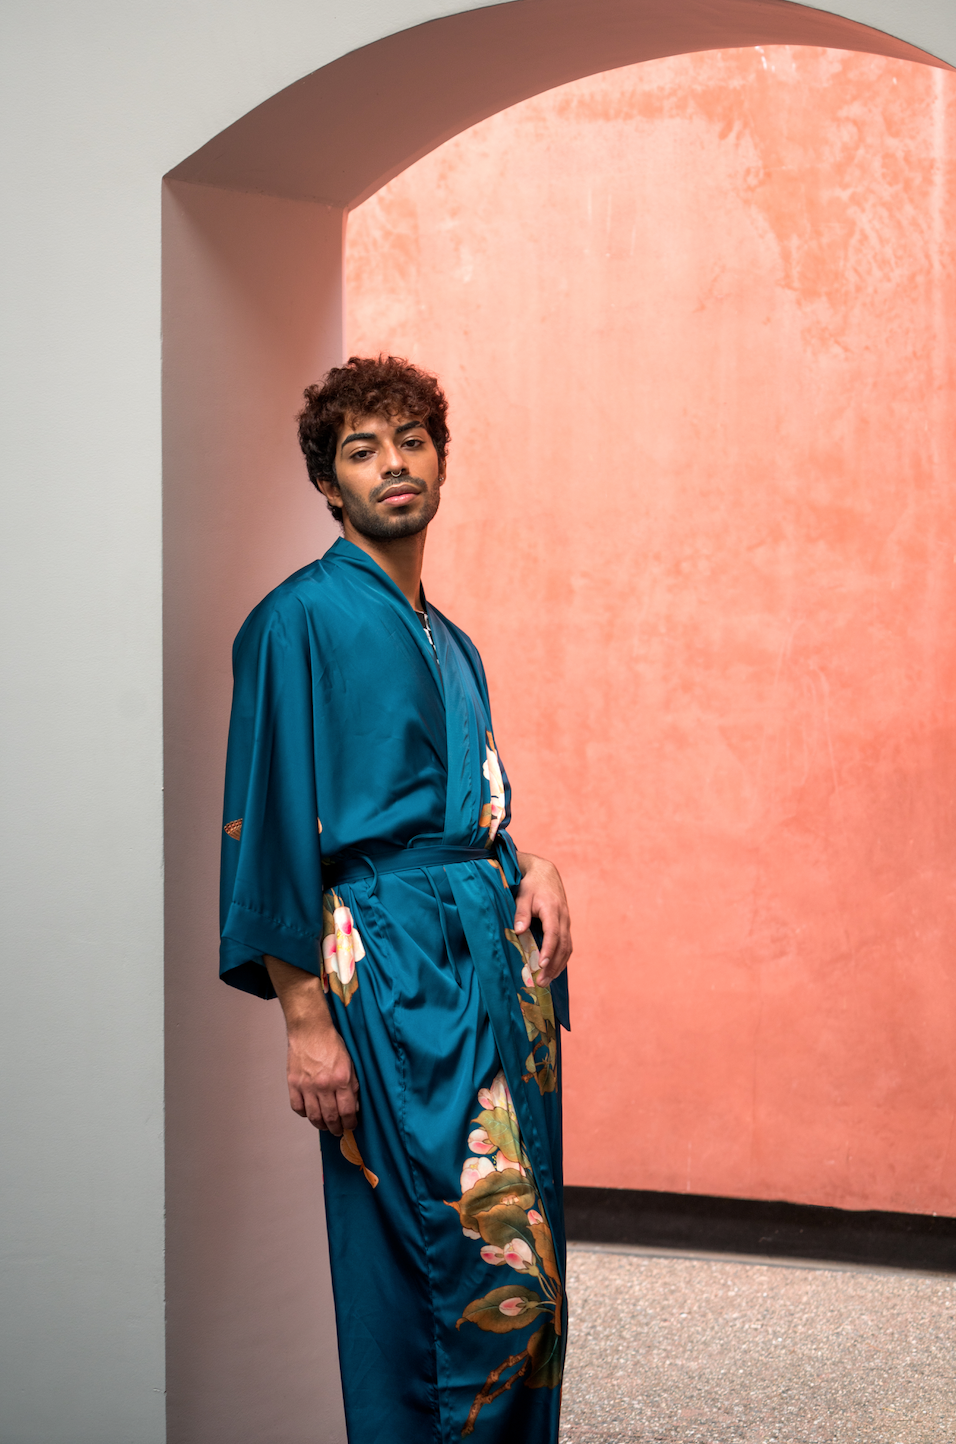 How to wear Kimono for men 